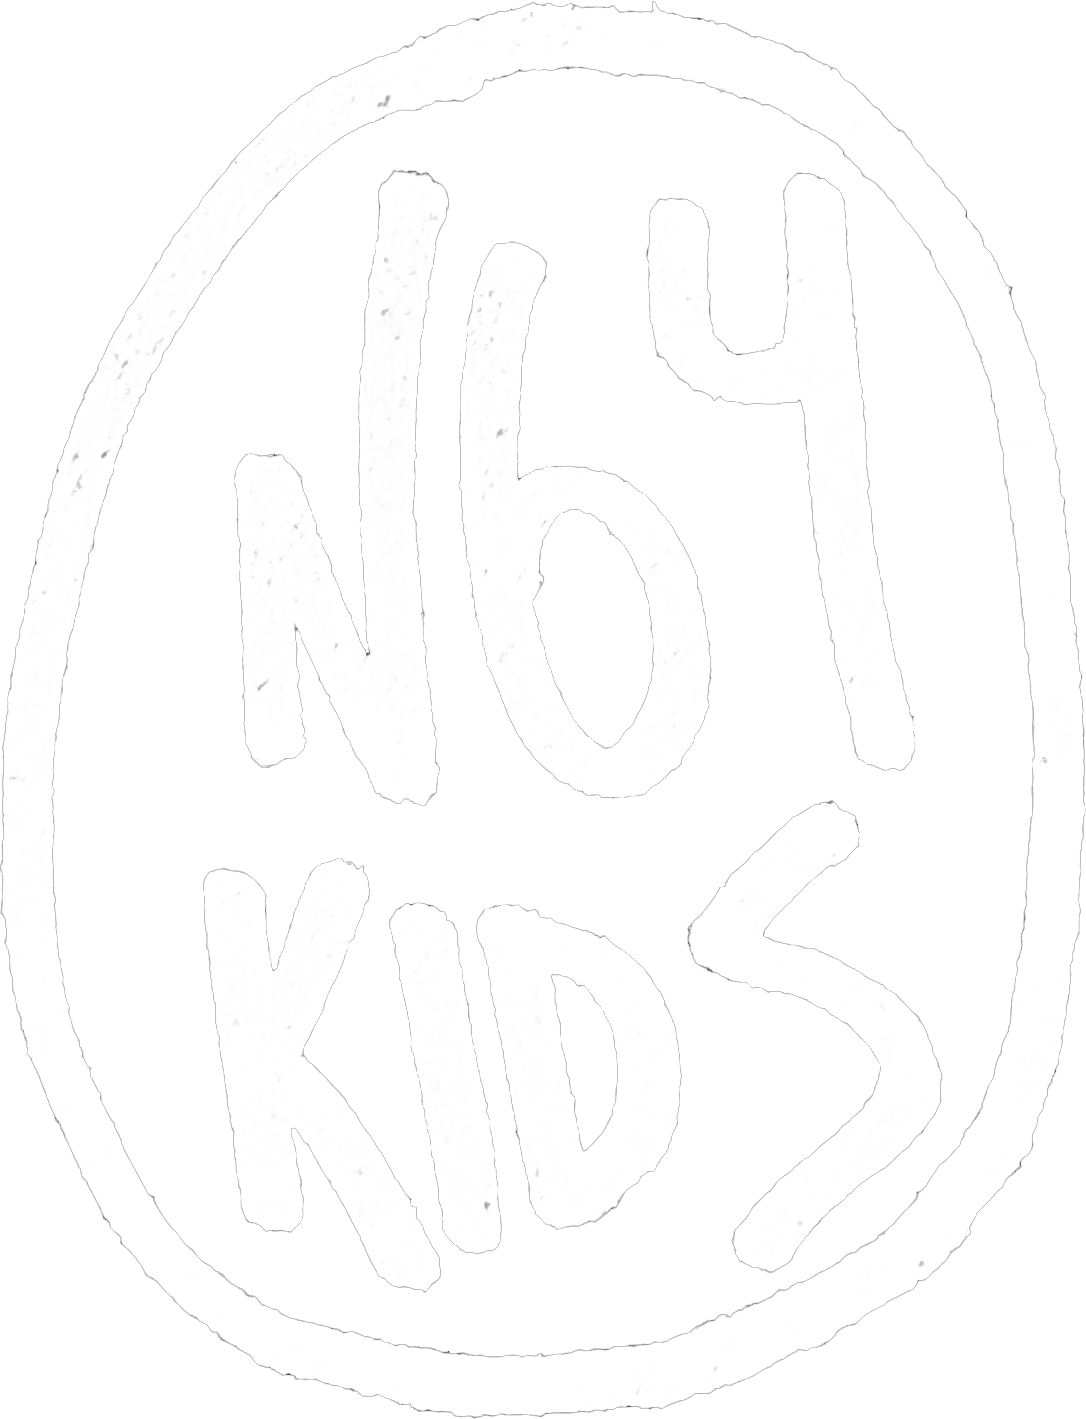 N64 KIDS